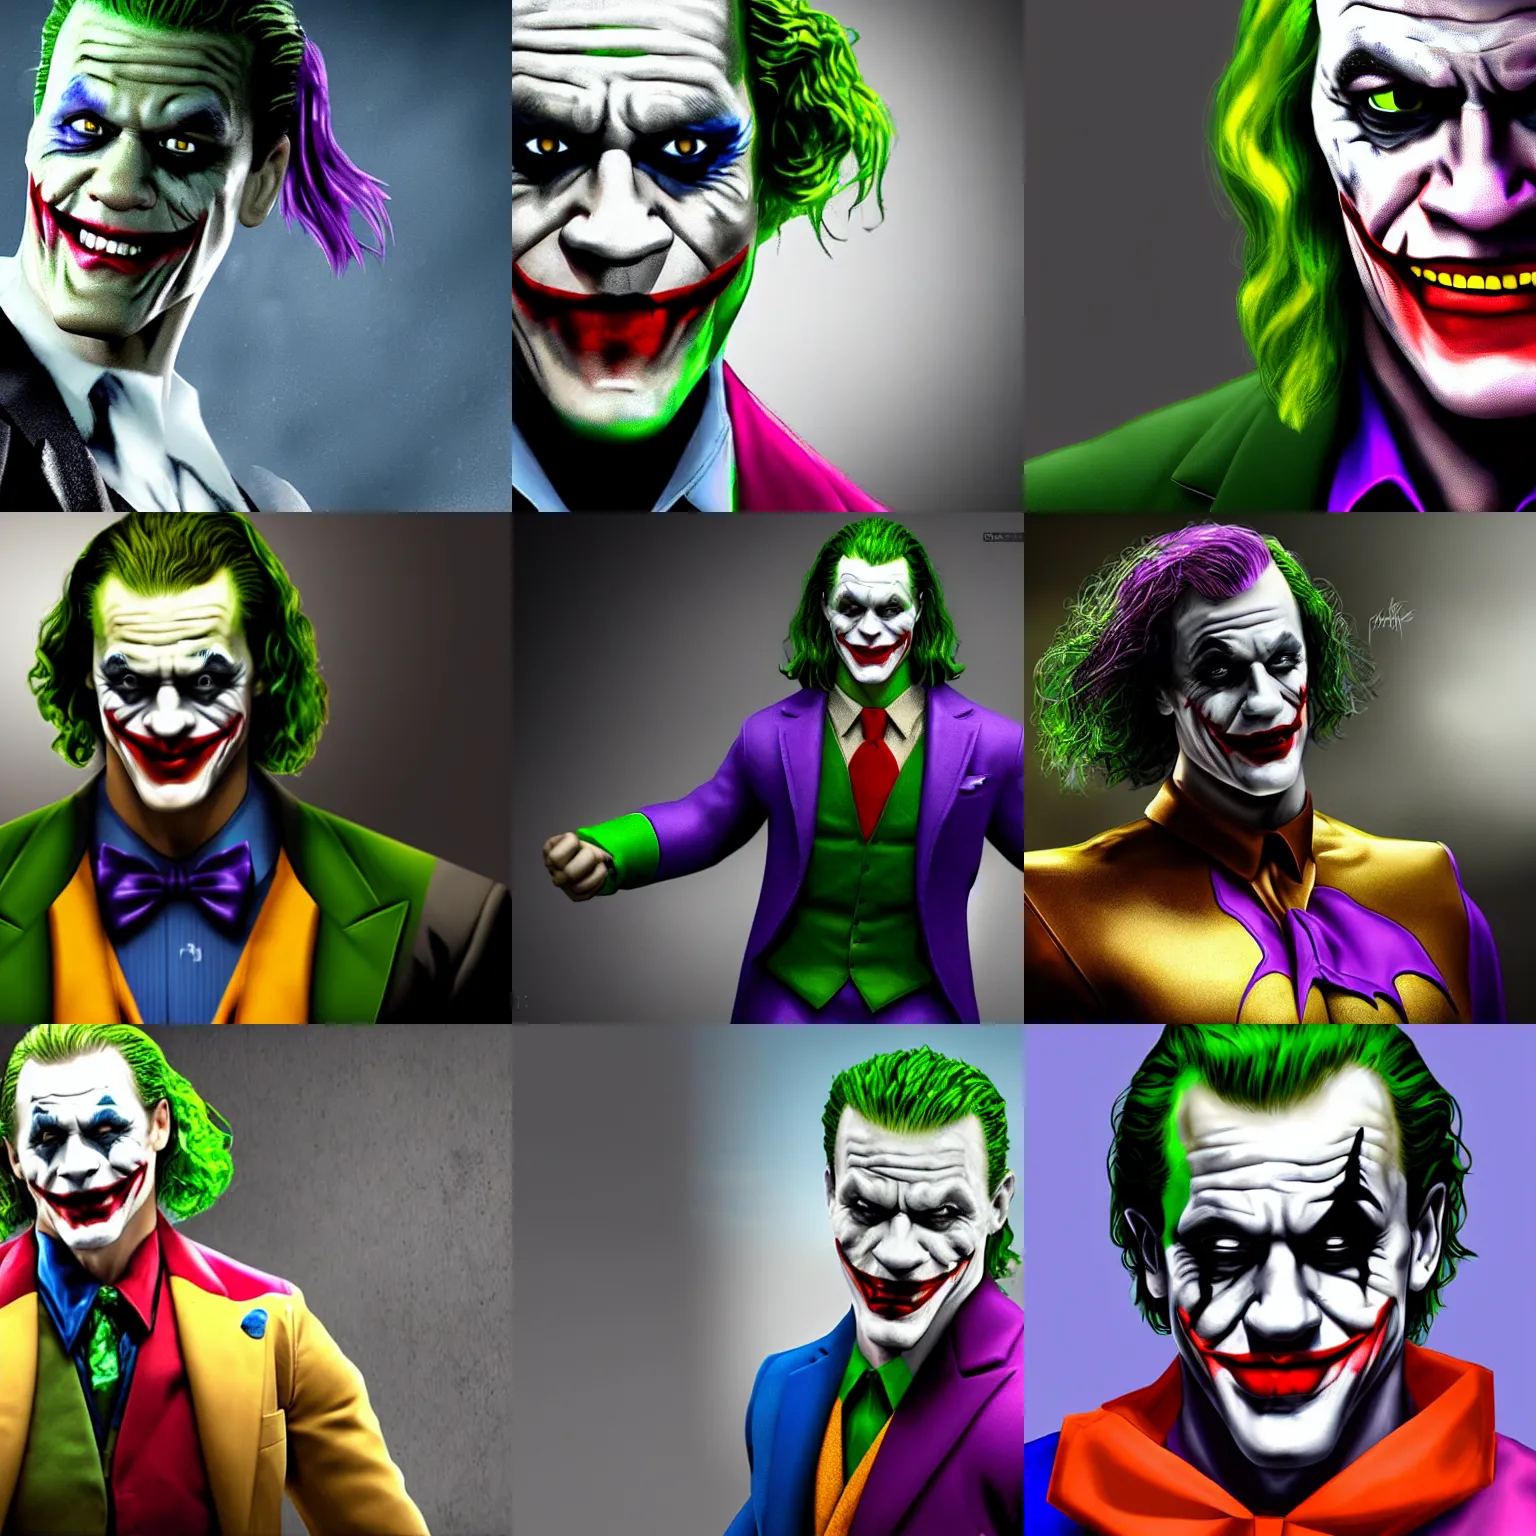 Prompt: John Cena playing as the Joker, realism, 4k